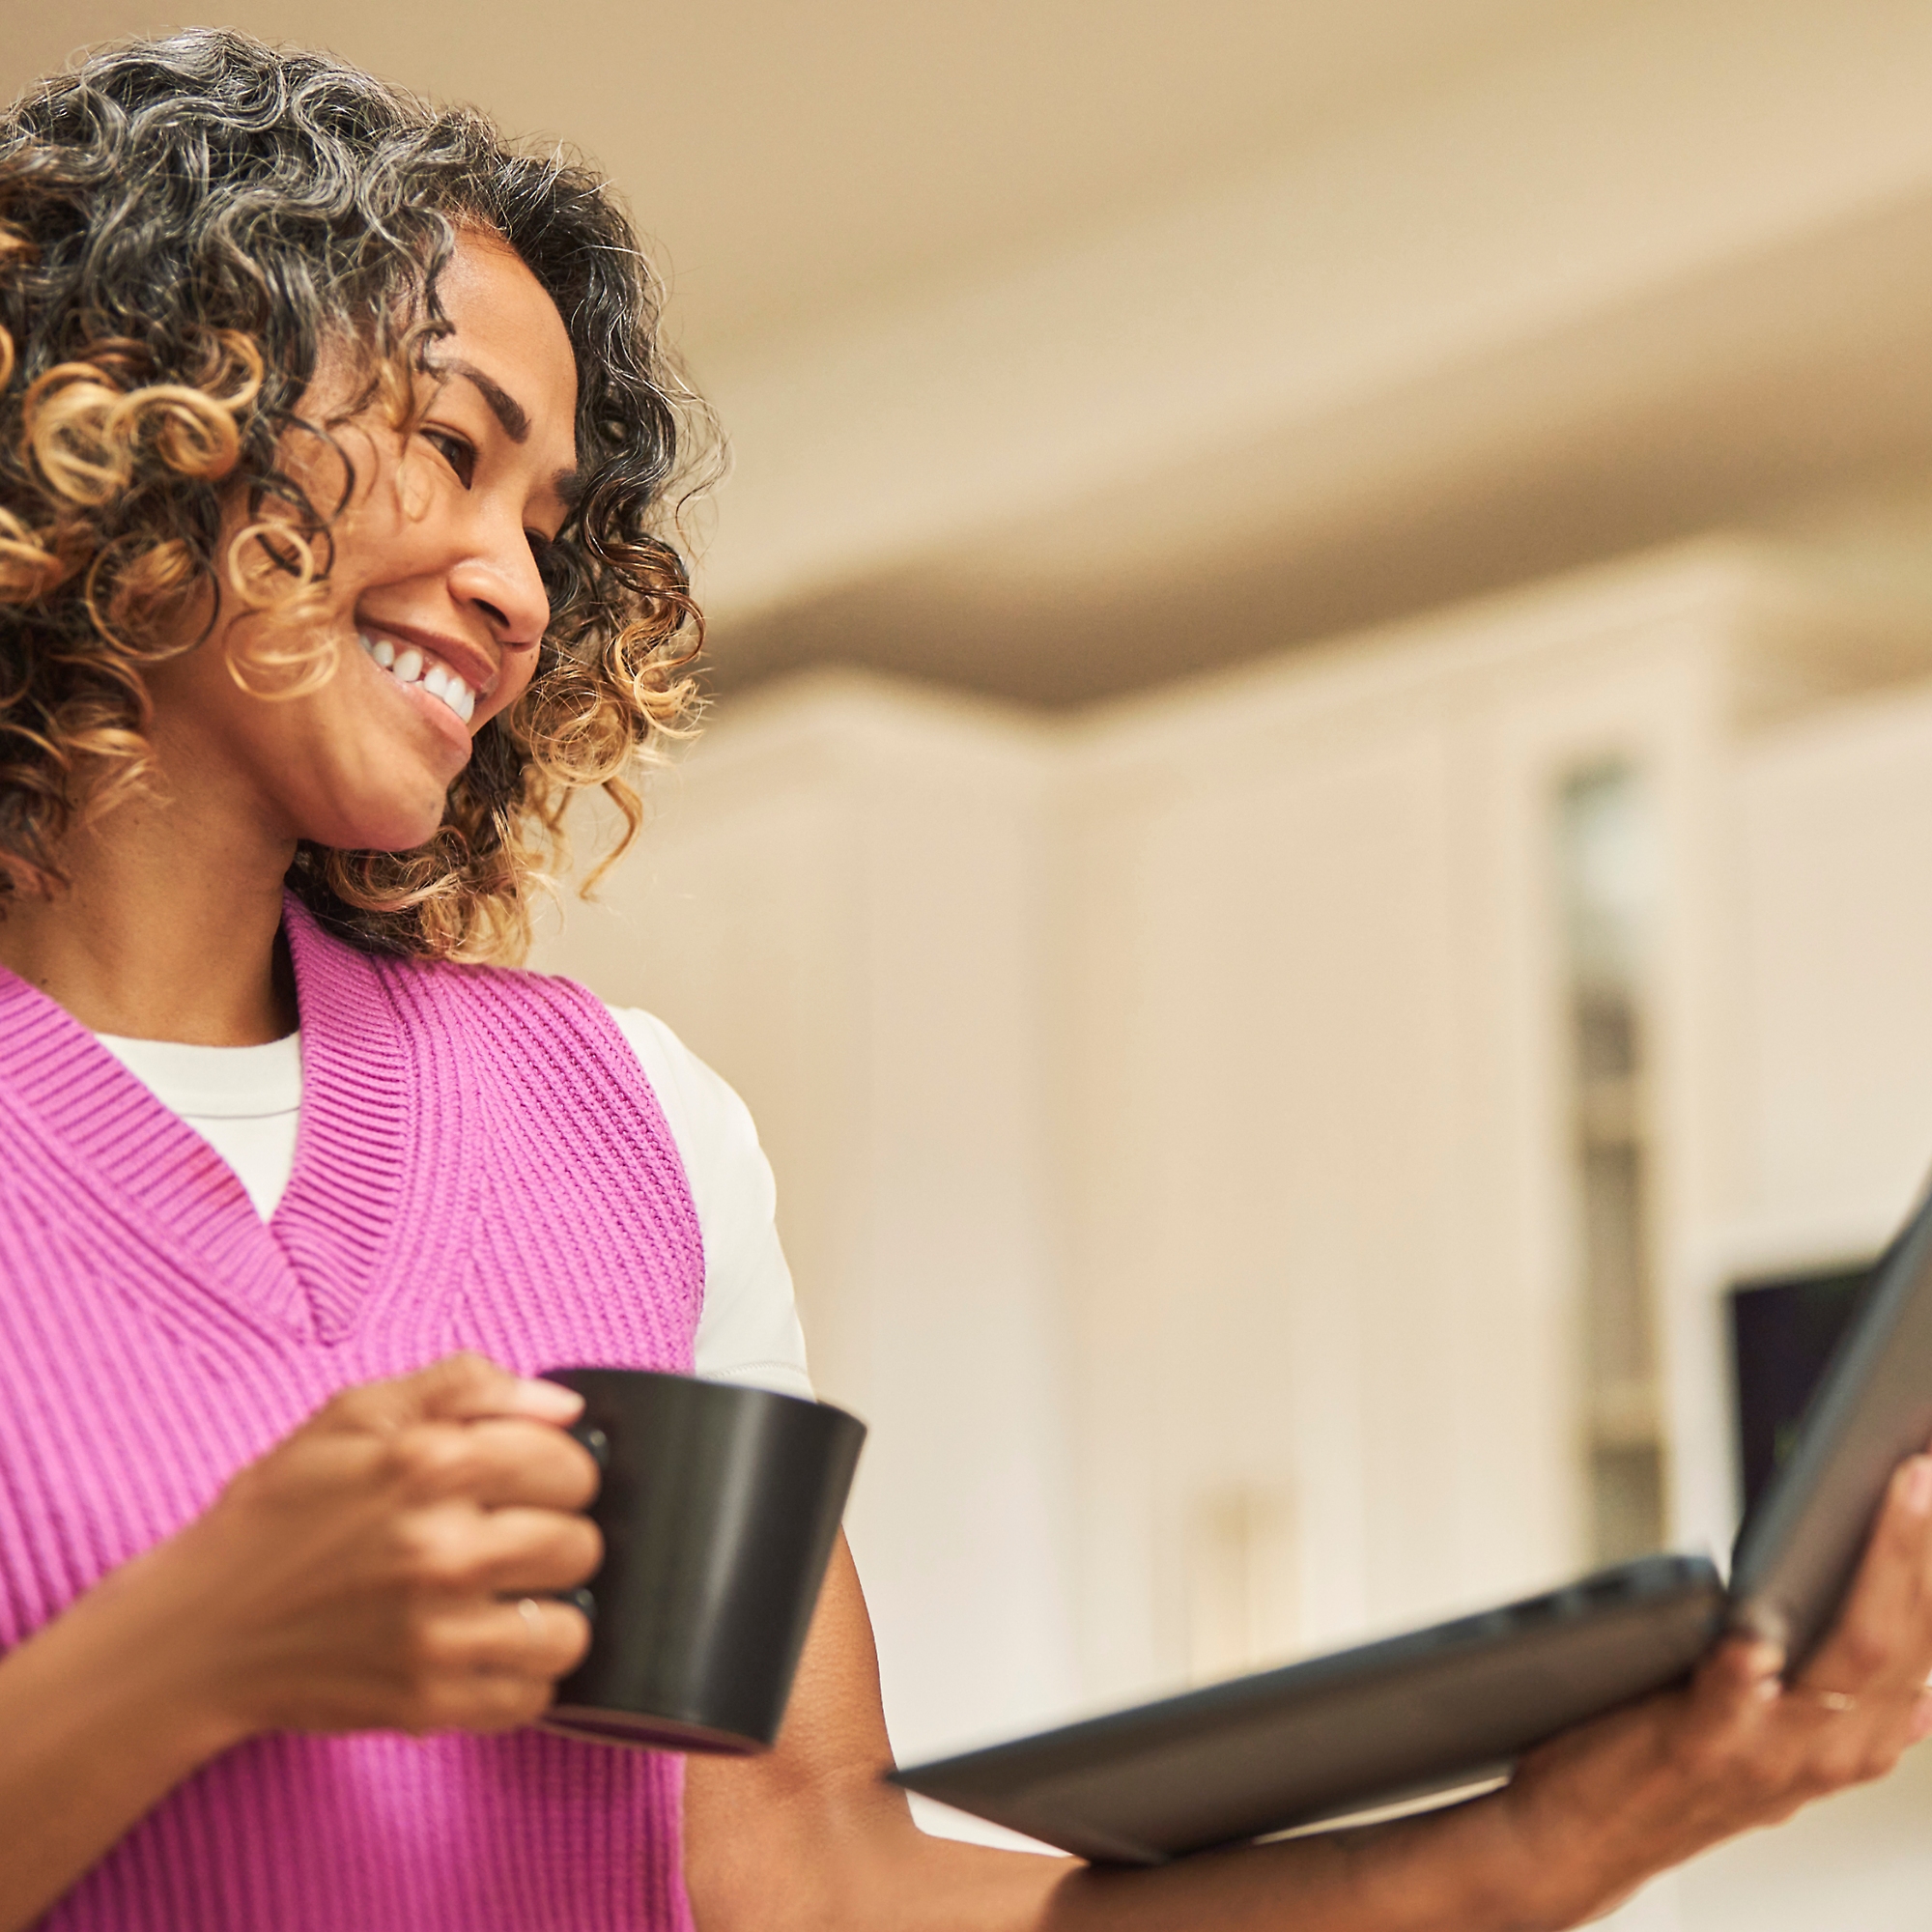 Une femme souriante avec une tasse de café dans une main et un ordinateur portable dans une autre